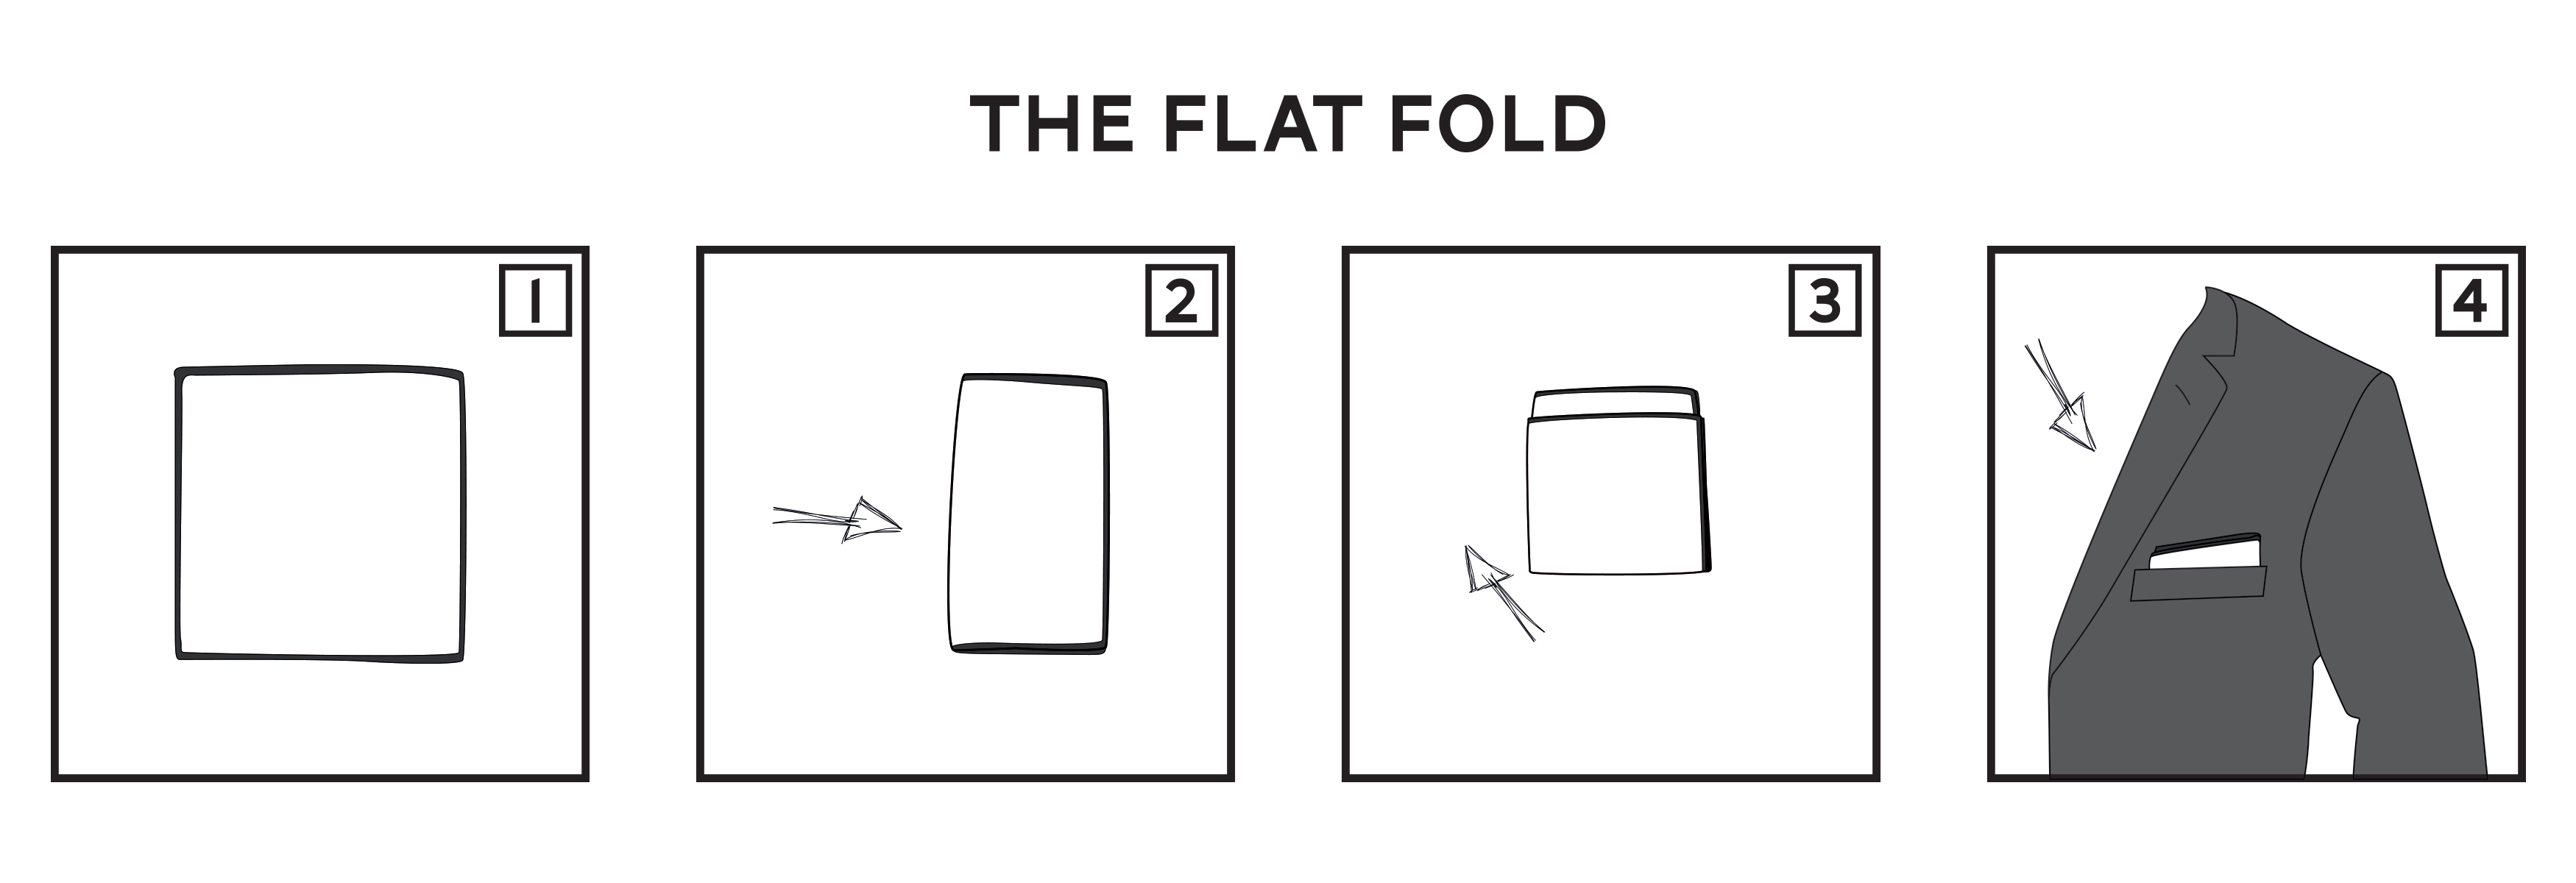 Flat Fold Pocket Square